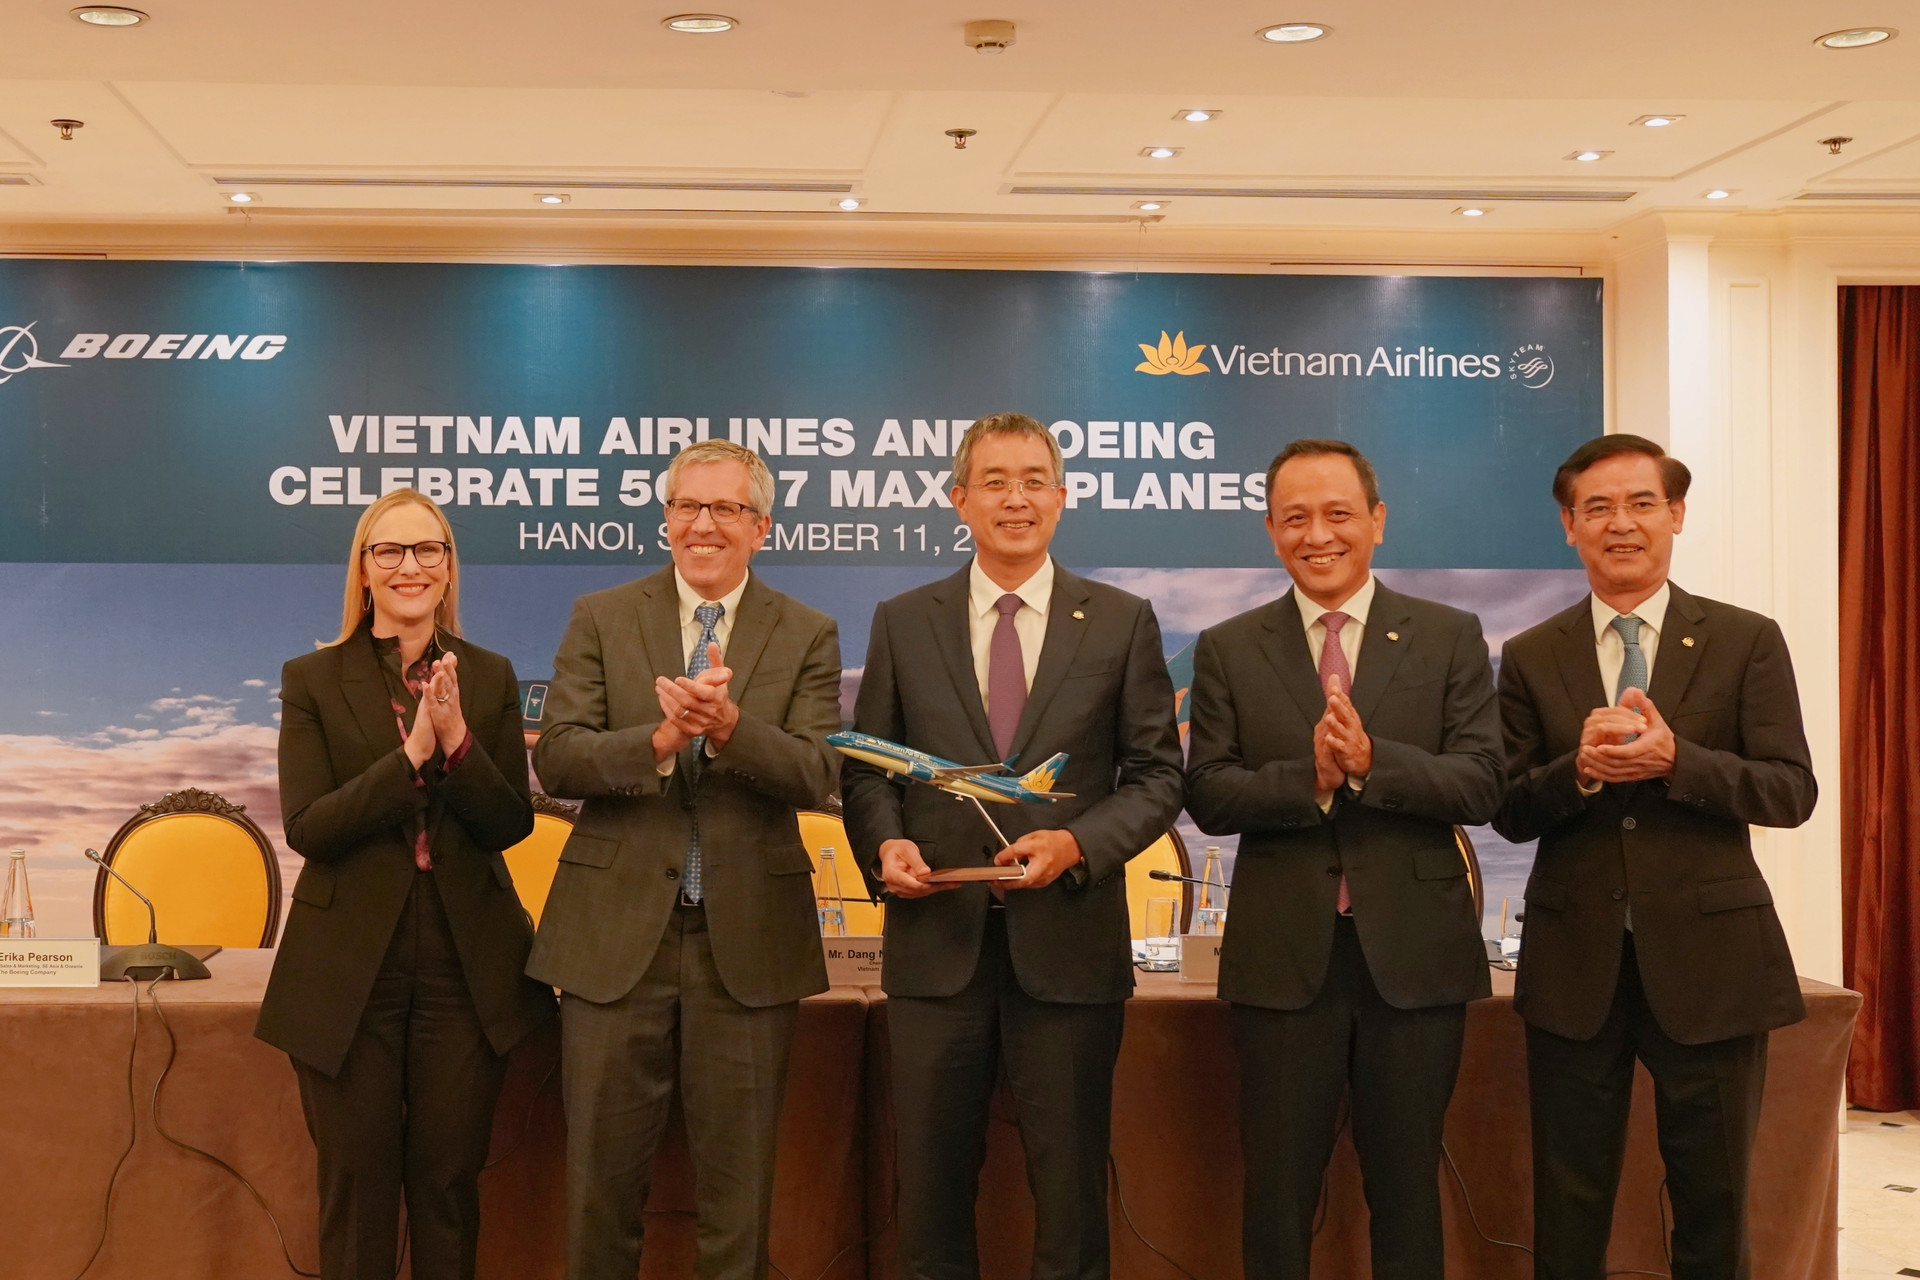 Hãng hàng không Vietnam Airlines và tập đoàn sản xuất máy bay Boeing đã ký kết bản ghi nhớ về việc chào bán 50 máy bay thân hẹp Boeing 737 MAX với giá trị 10 tỷ USD.